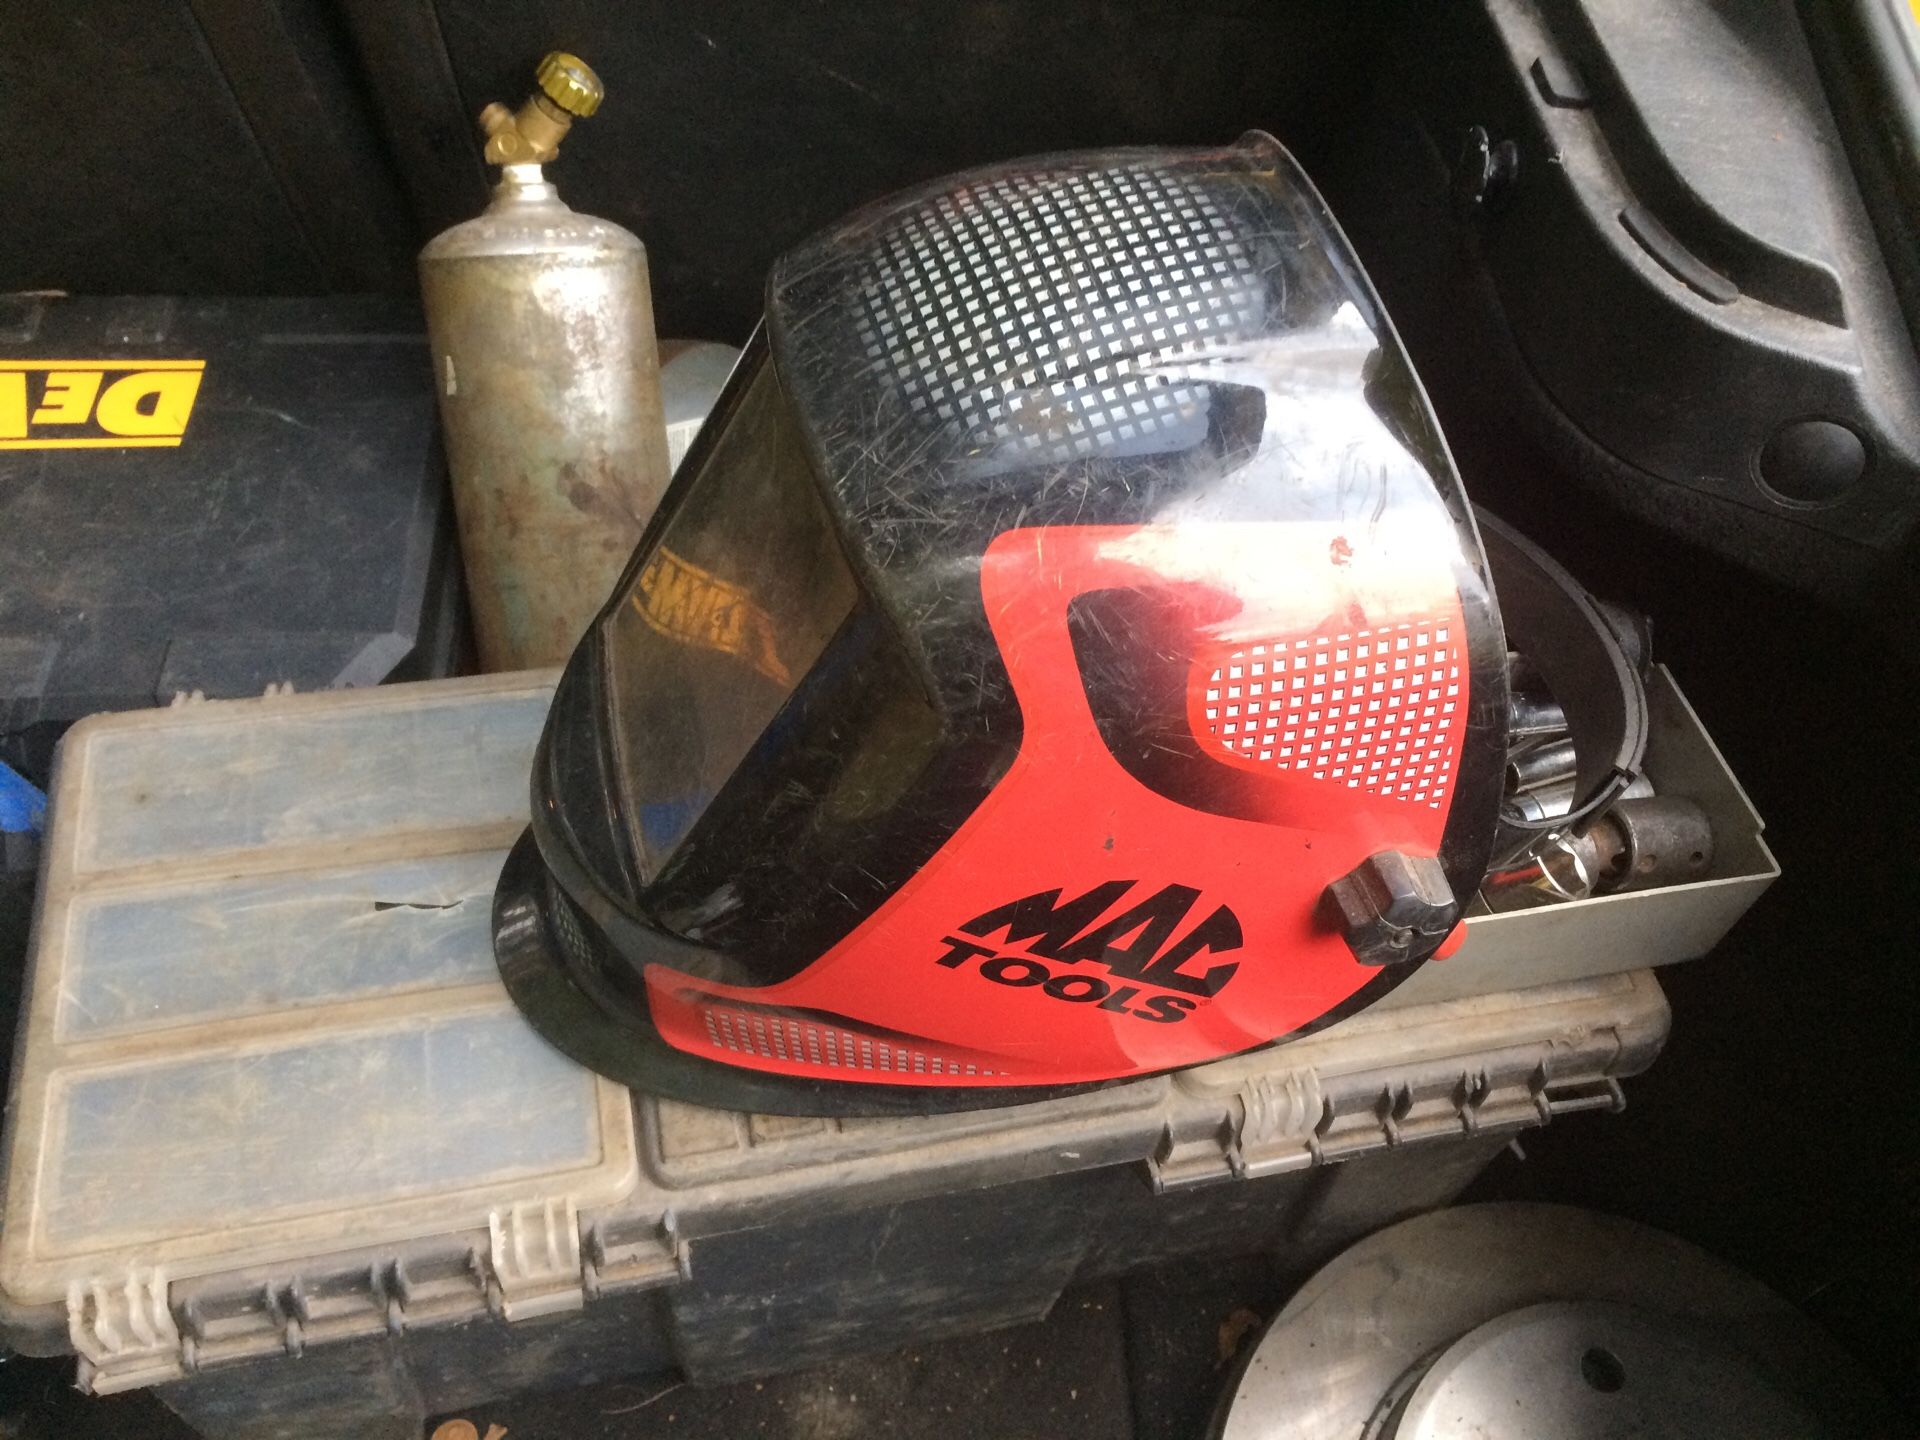 Mac tools welding helmet